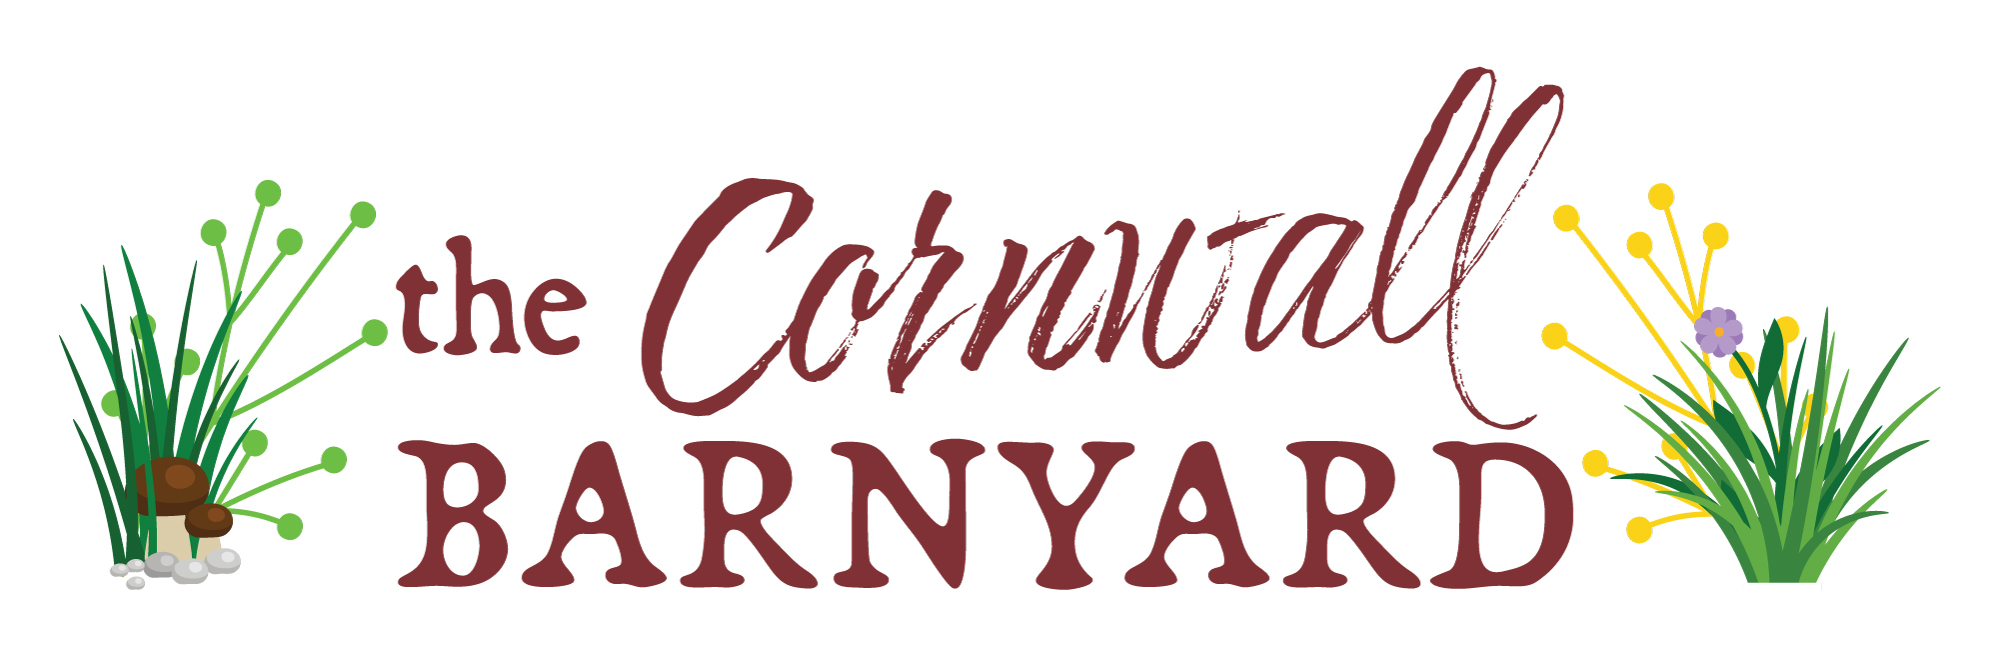 Cornwall Barnyard